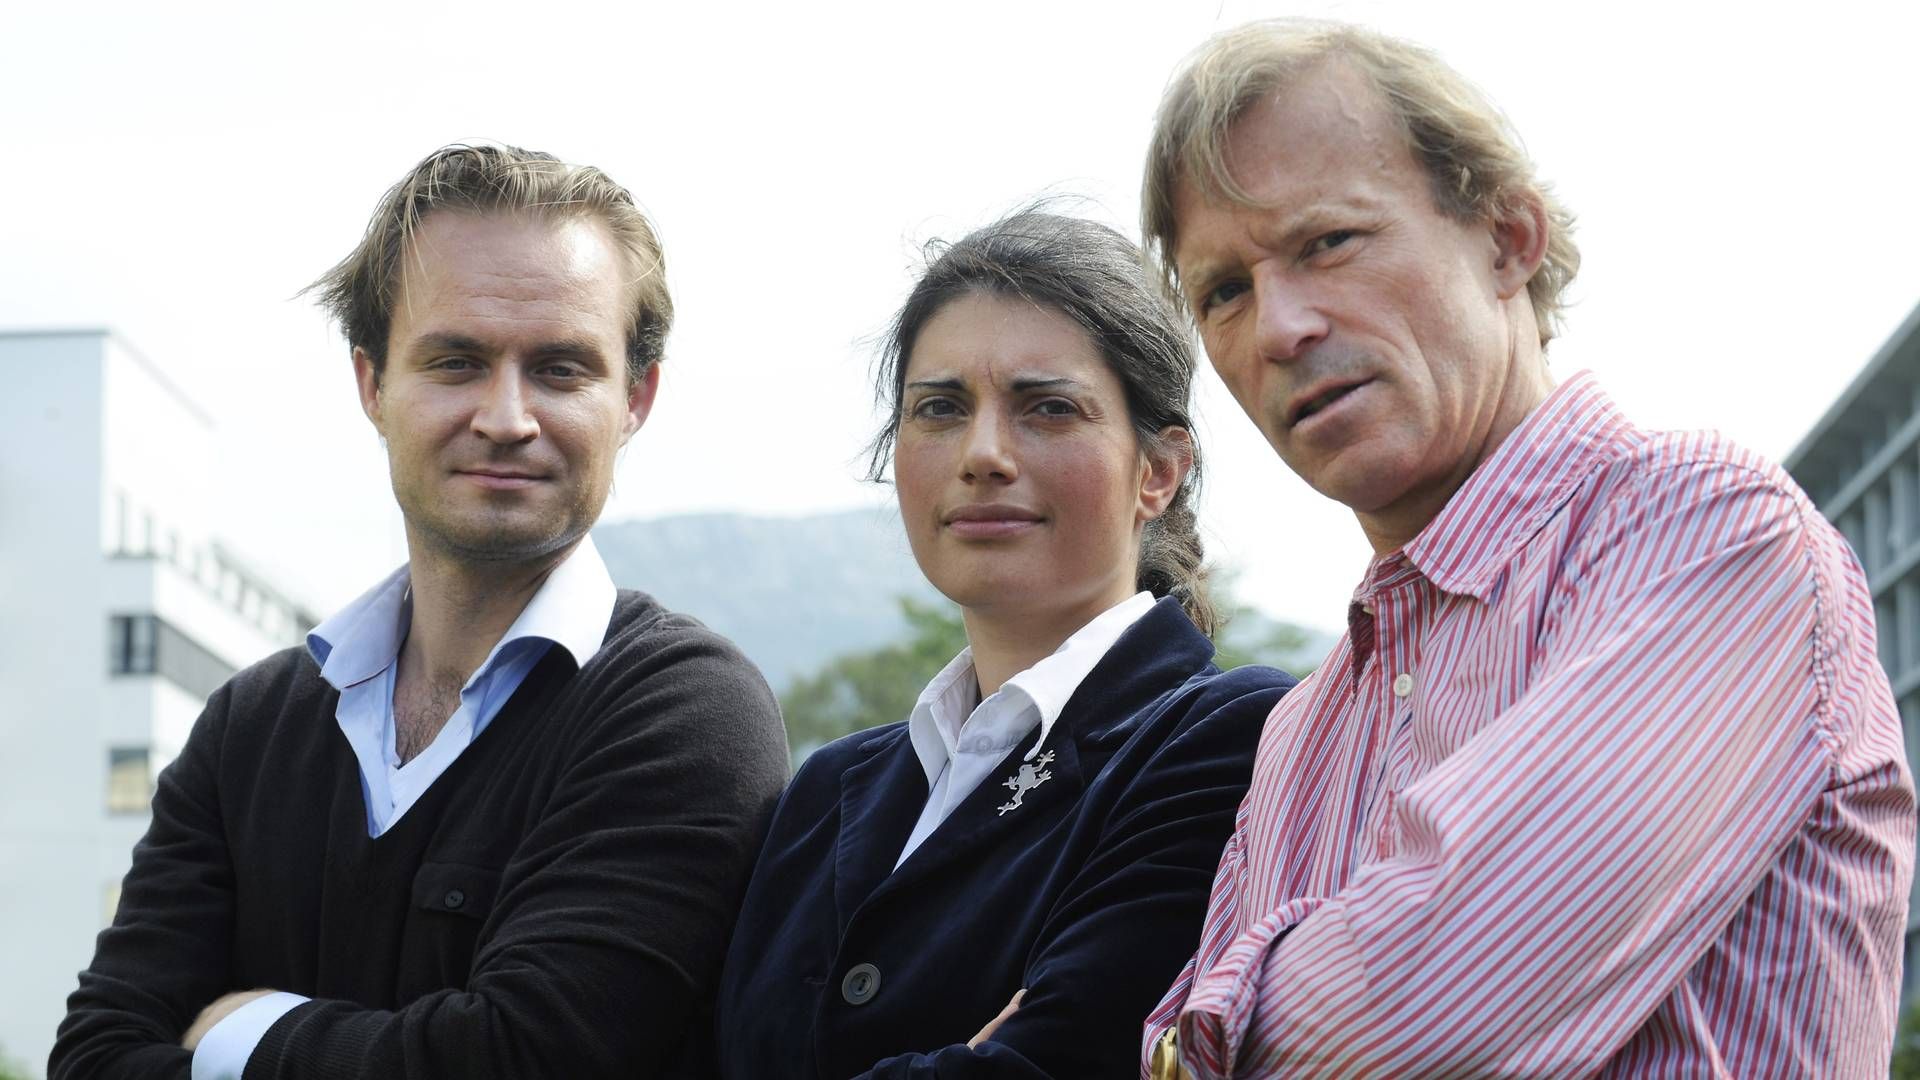 Racha Maktabi. Her flankert av Nils Christian Nordhus og Frode Sulland i forbindelse med lansering av TV2s dokumentarserie «Forsvarsadvokatene» i 2009 | Foto: Marit Hommedal / NTB